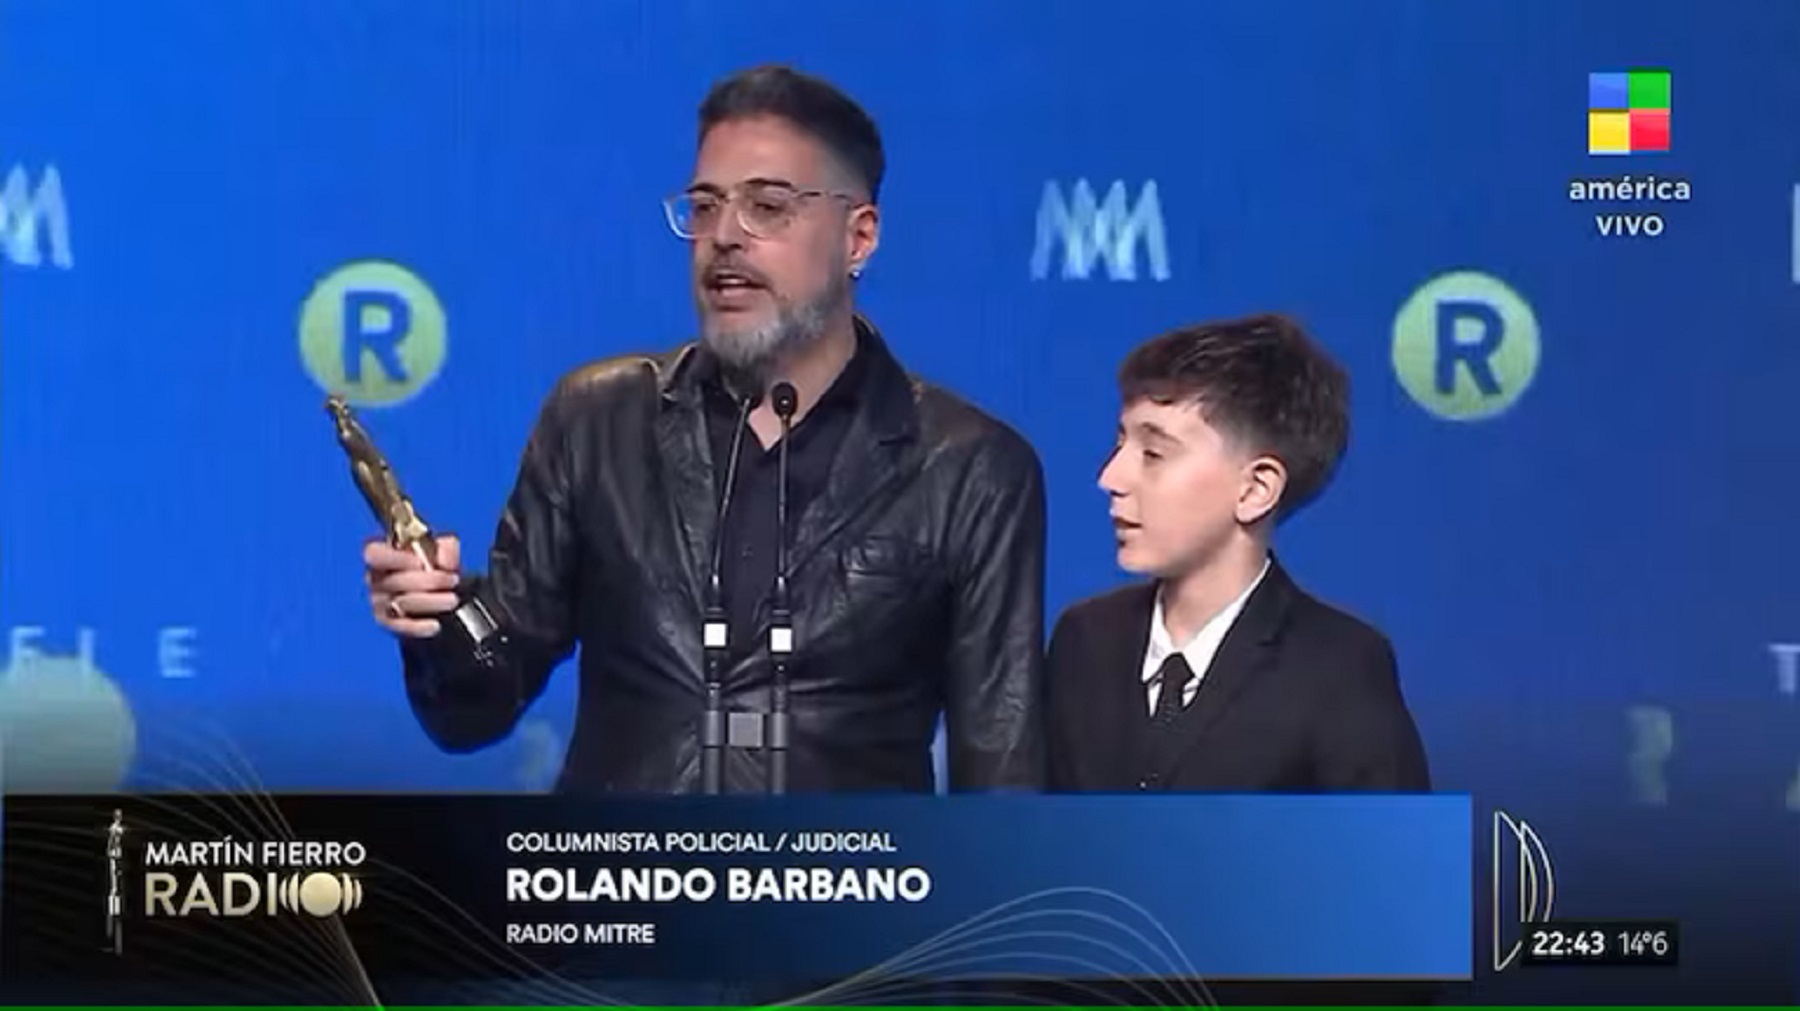 Rolando Barbano recibiendo el Martín Fierro
